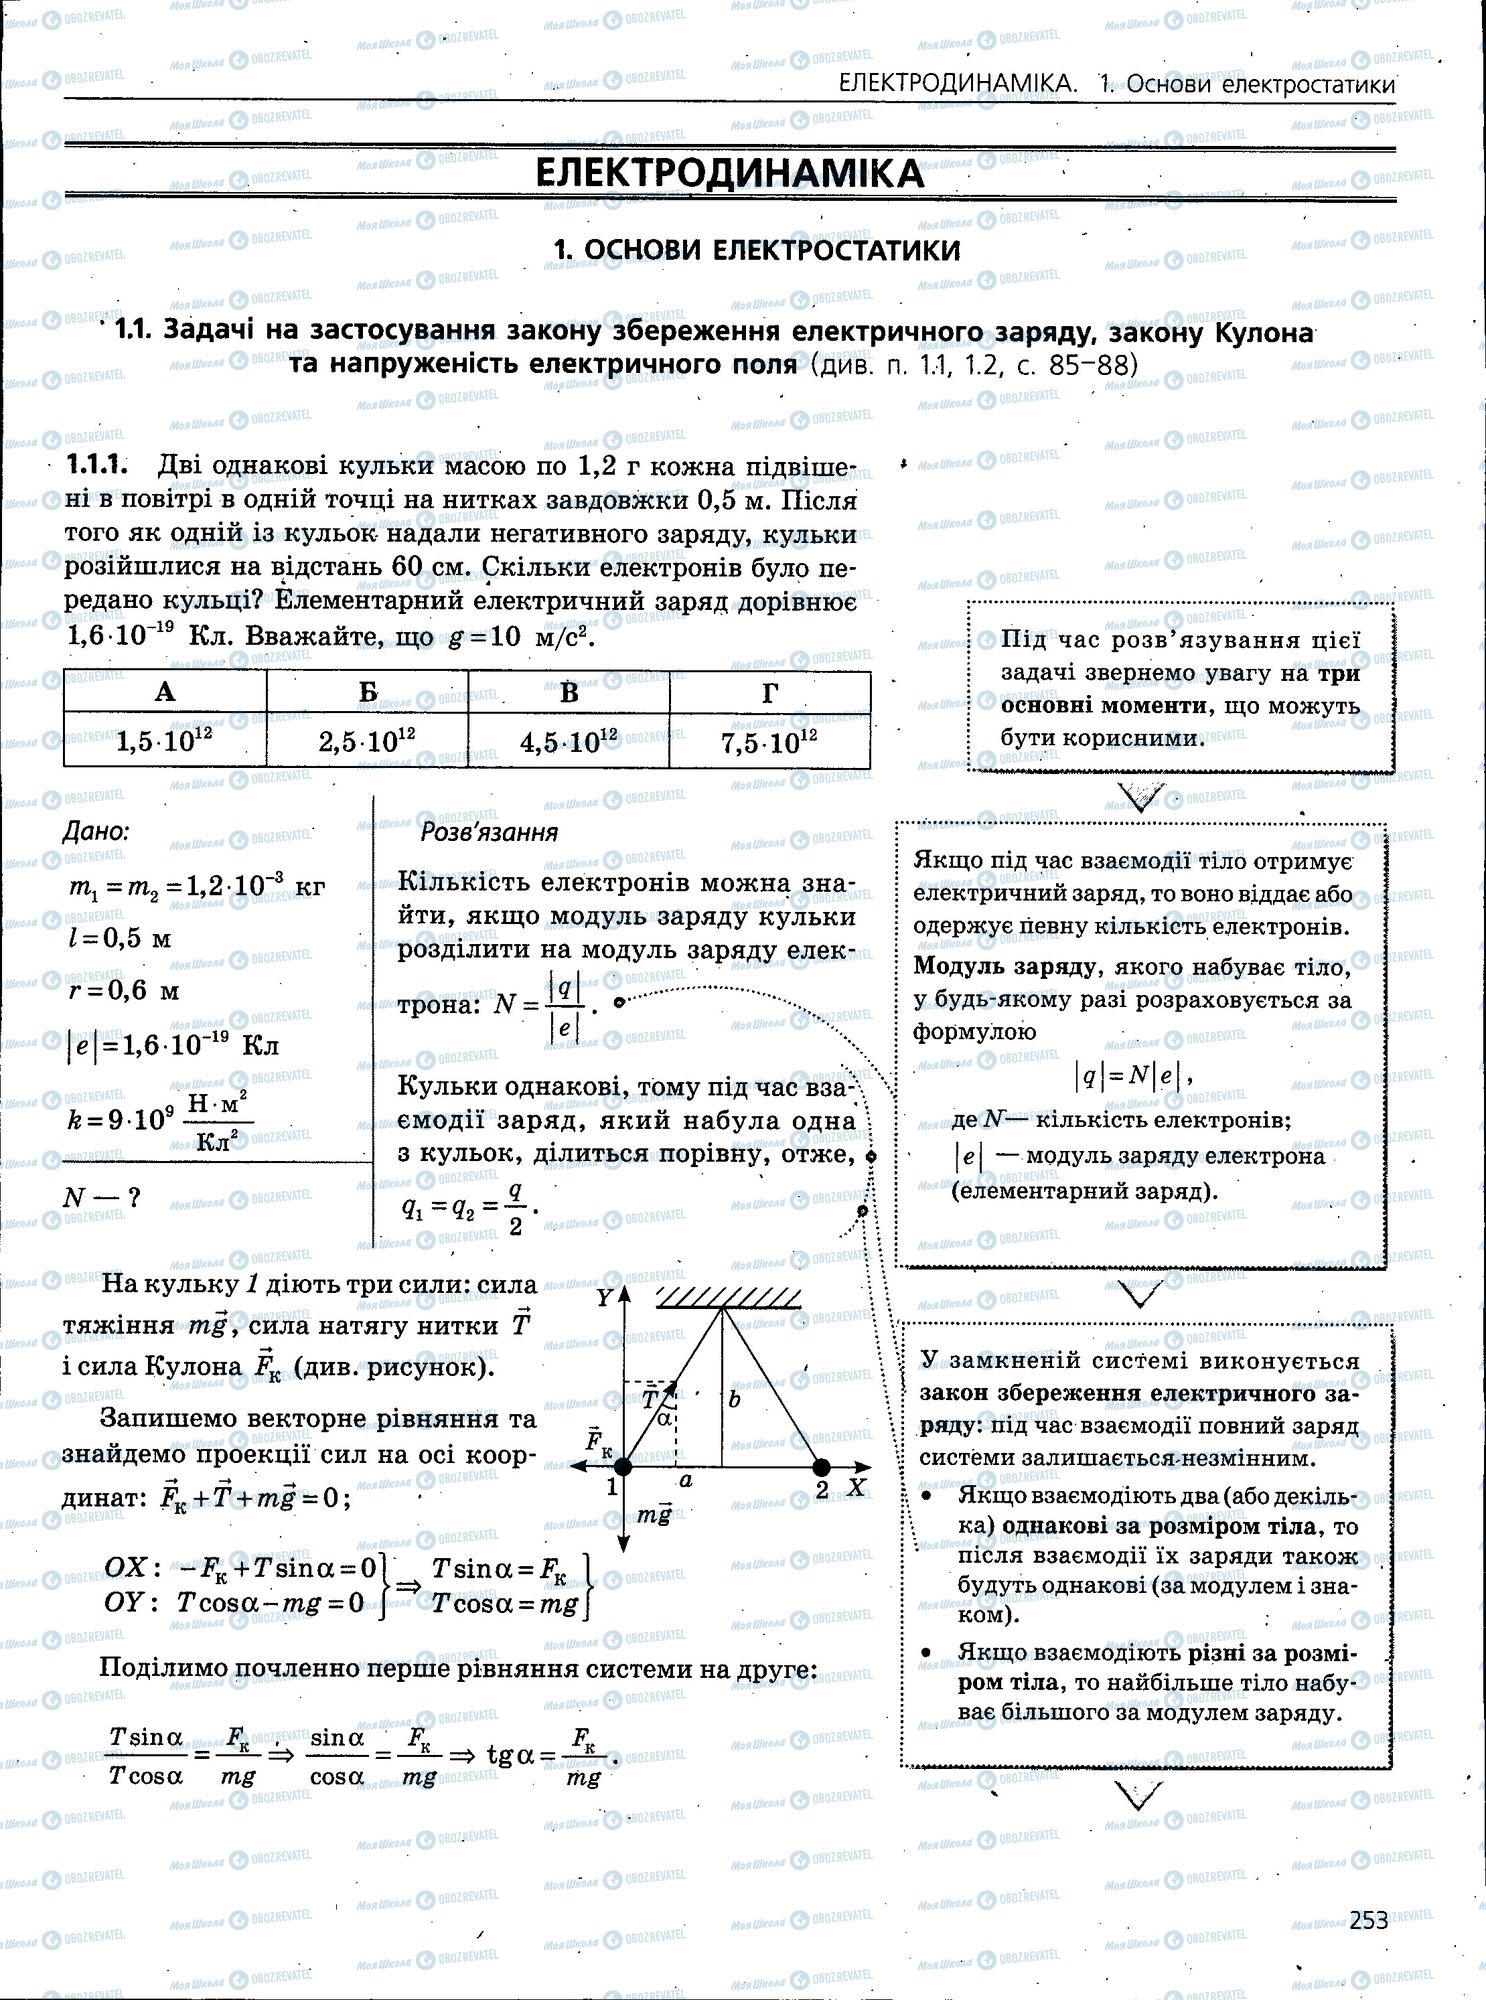 ЗНО Физика 11 класс страница 253